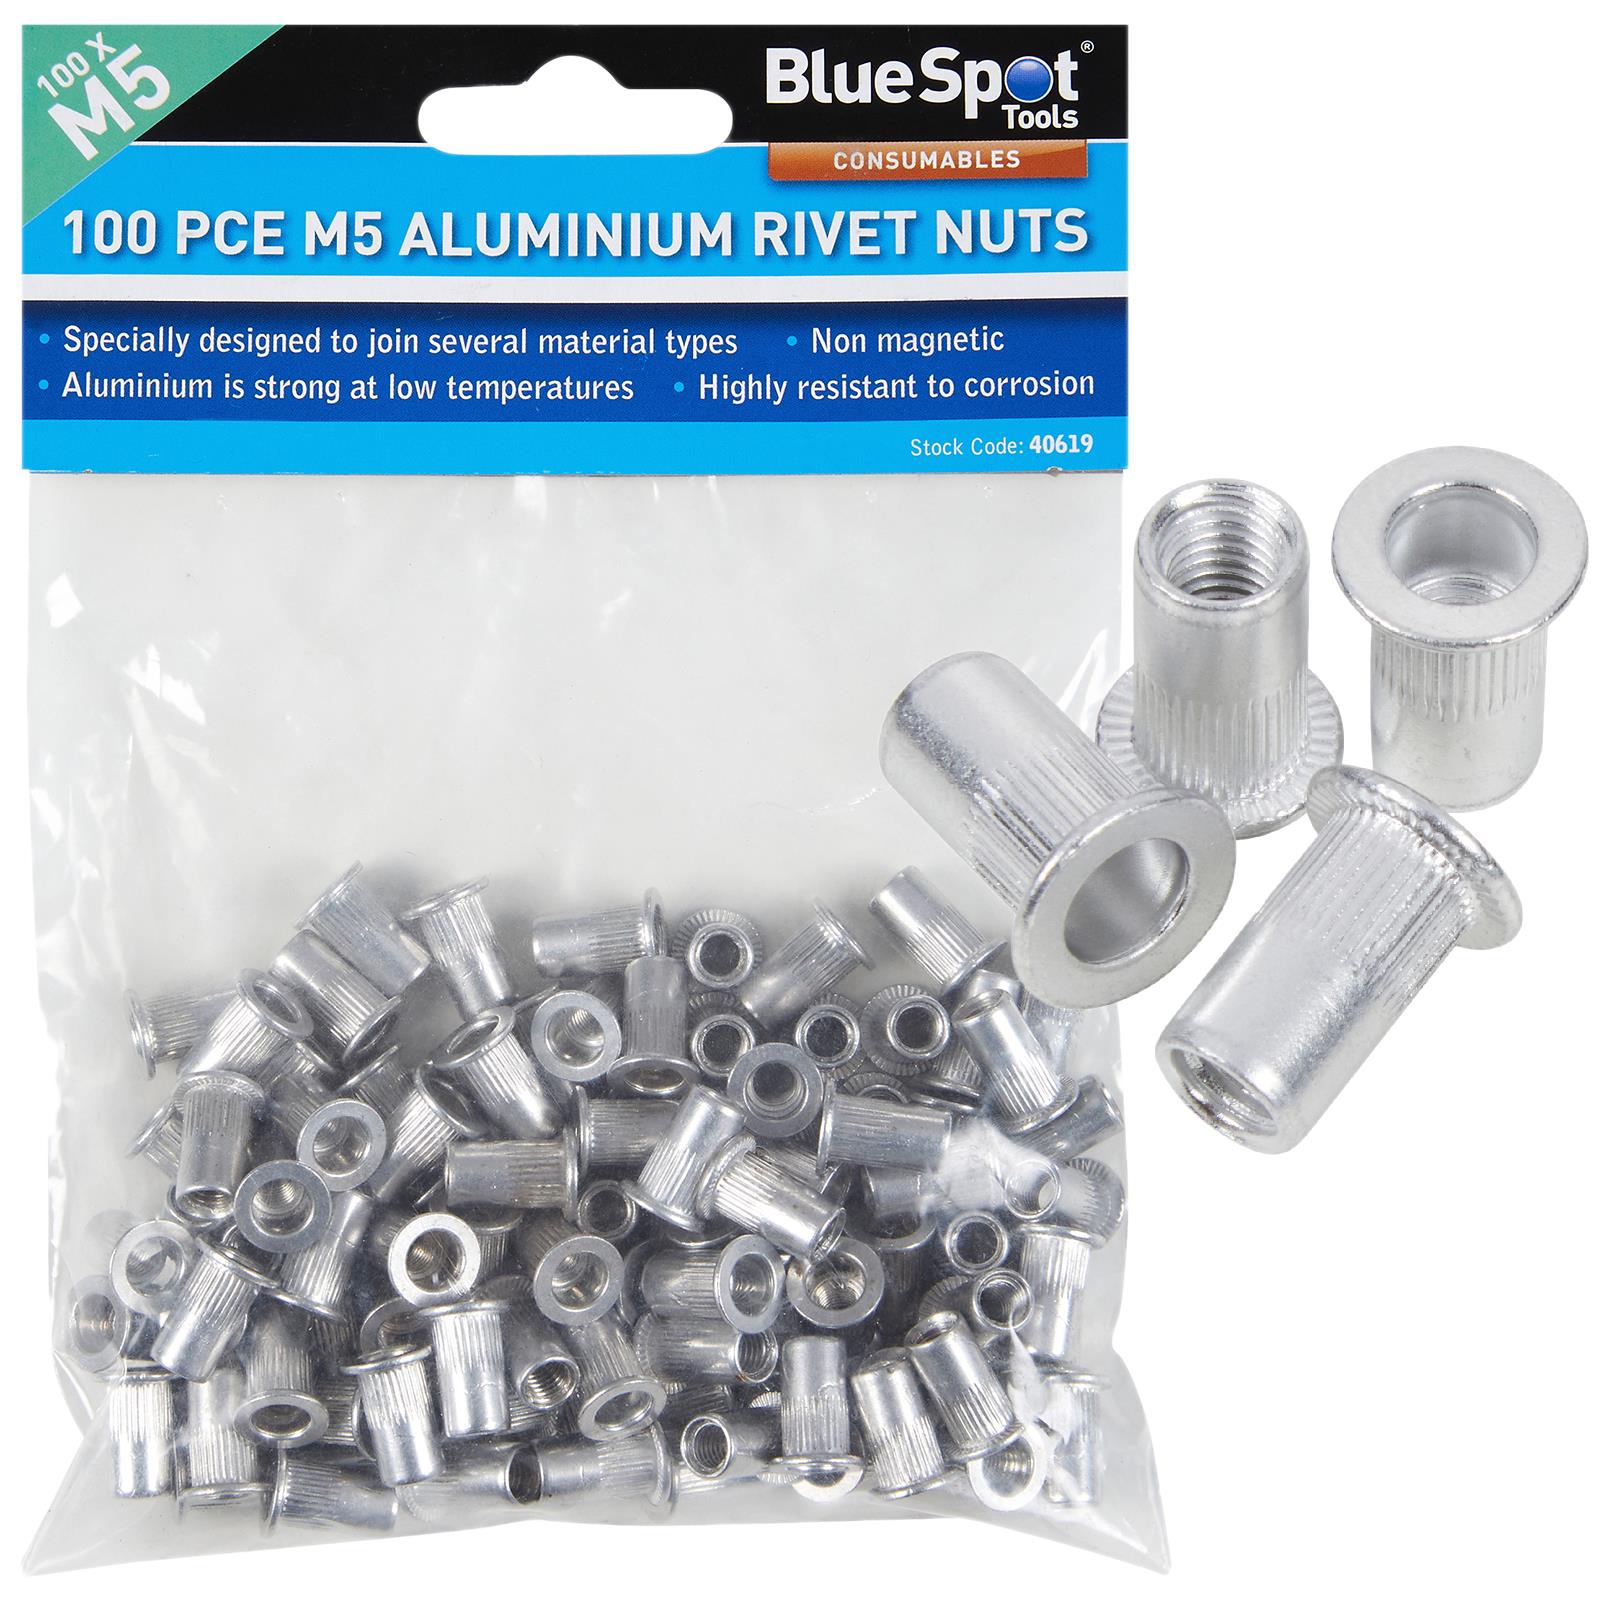 BlueSpot Aluminium Rivet Nuts M5 100 Piece Rivnuts